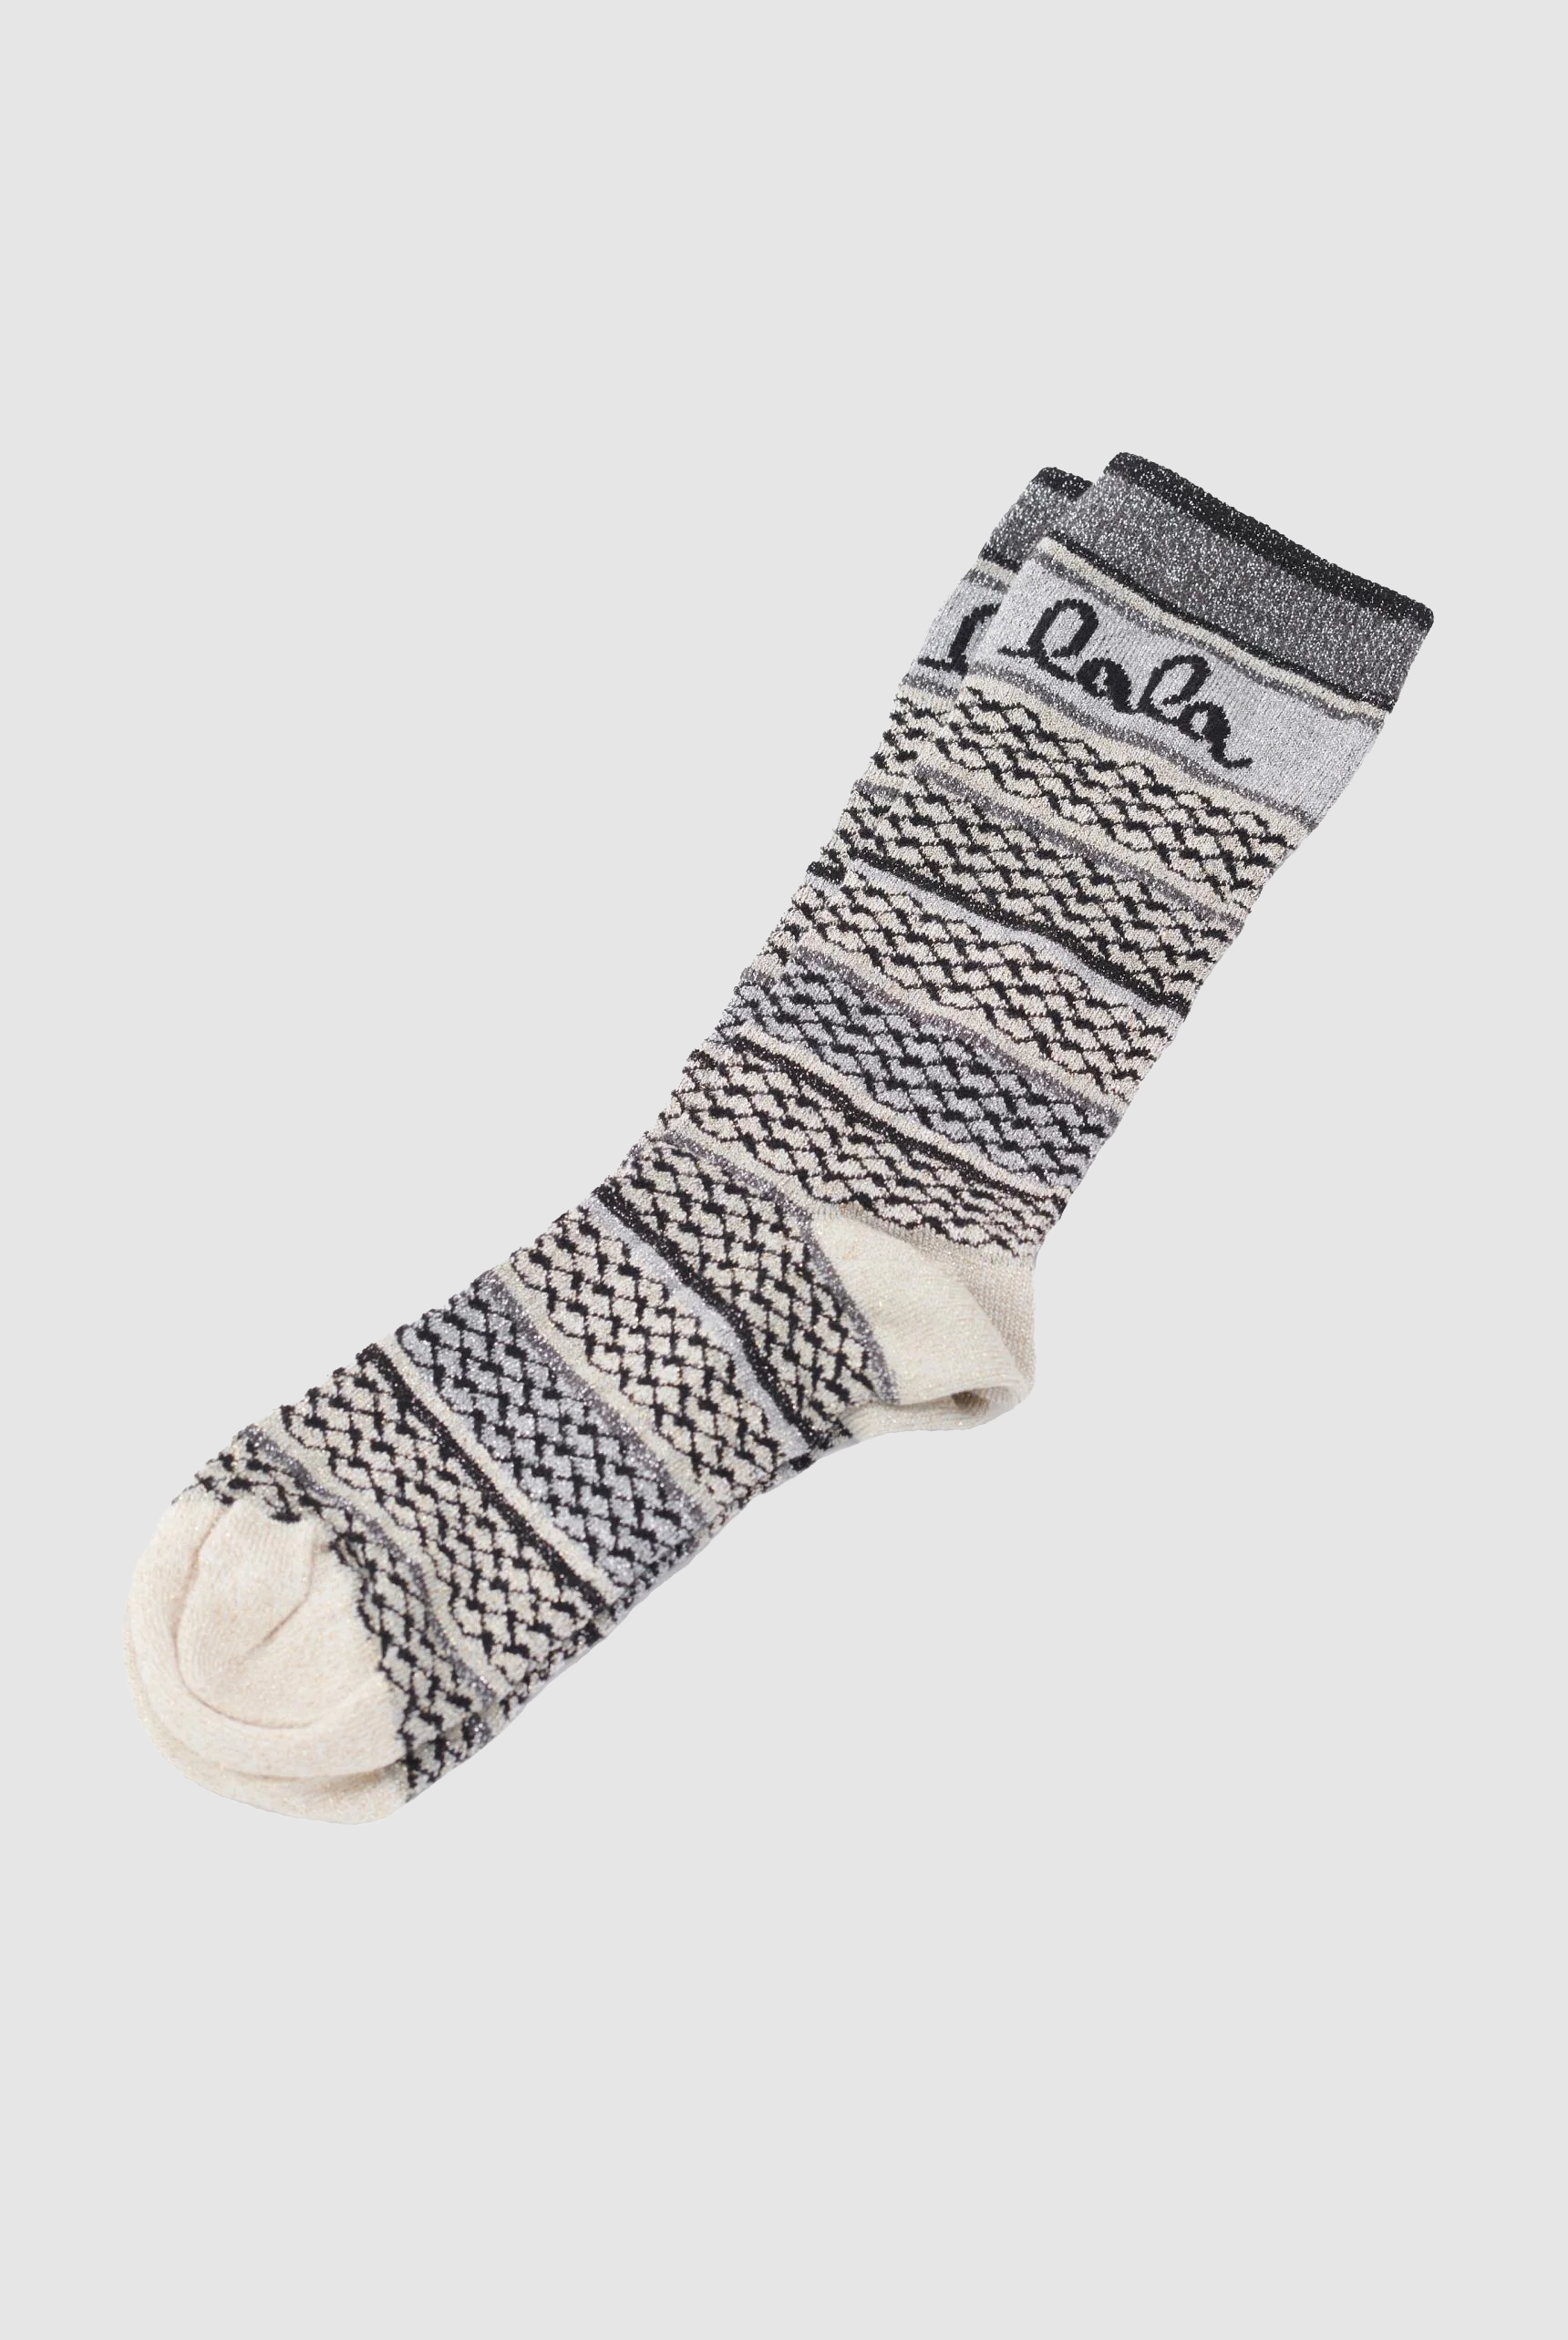 Ein Paar Socken mit einem weiß-schwarzen Muster und einem "lala" Schriftzug